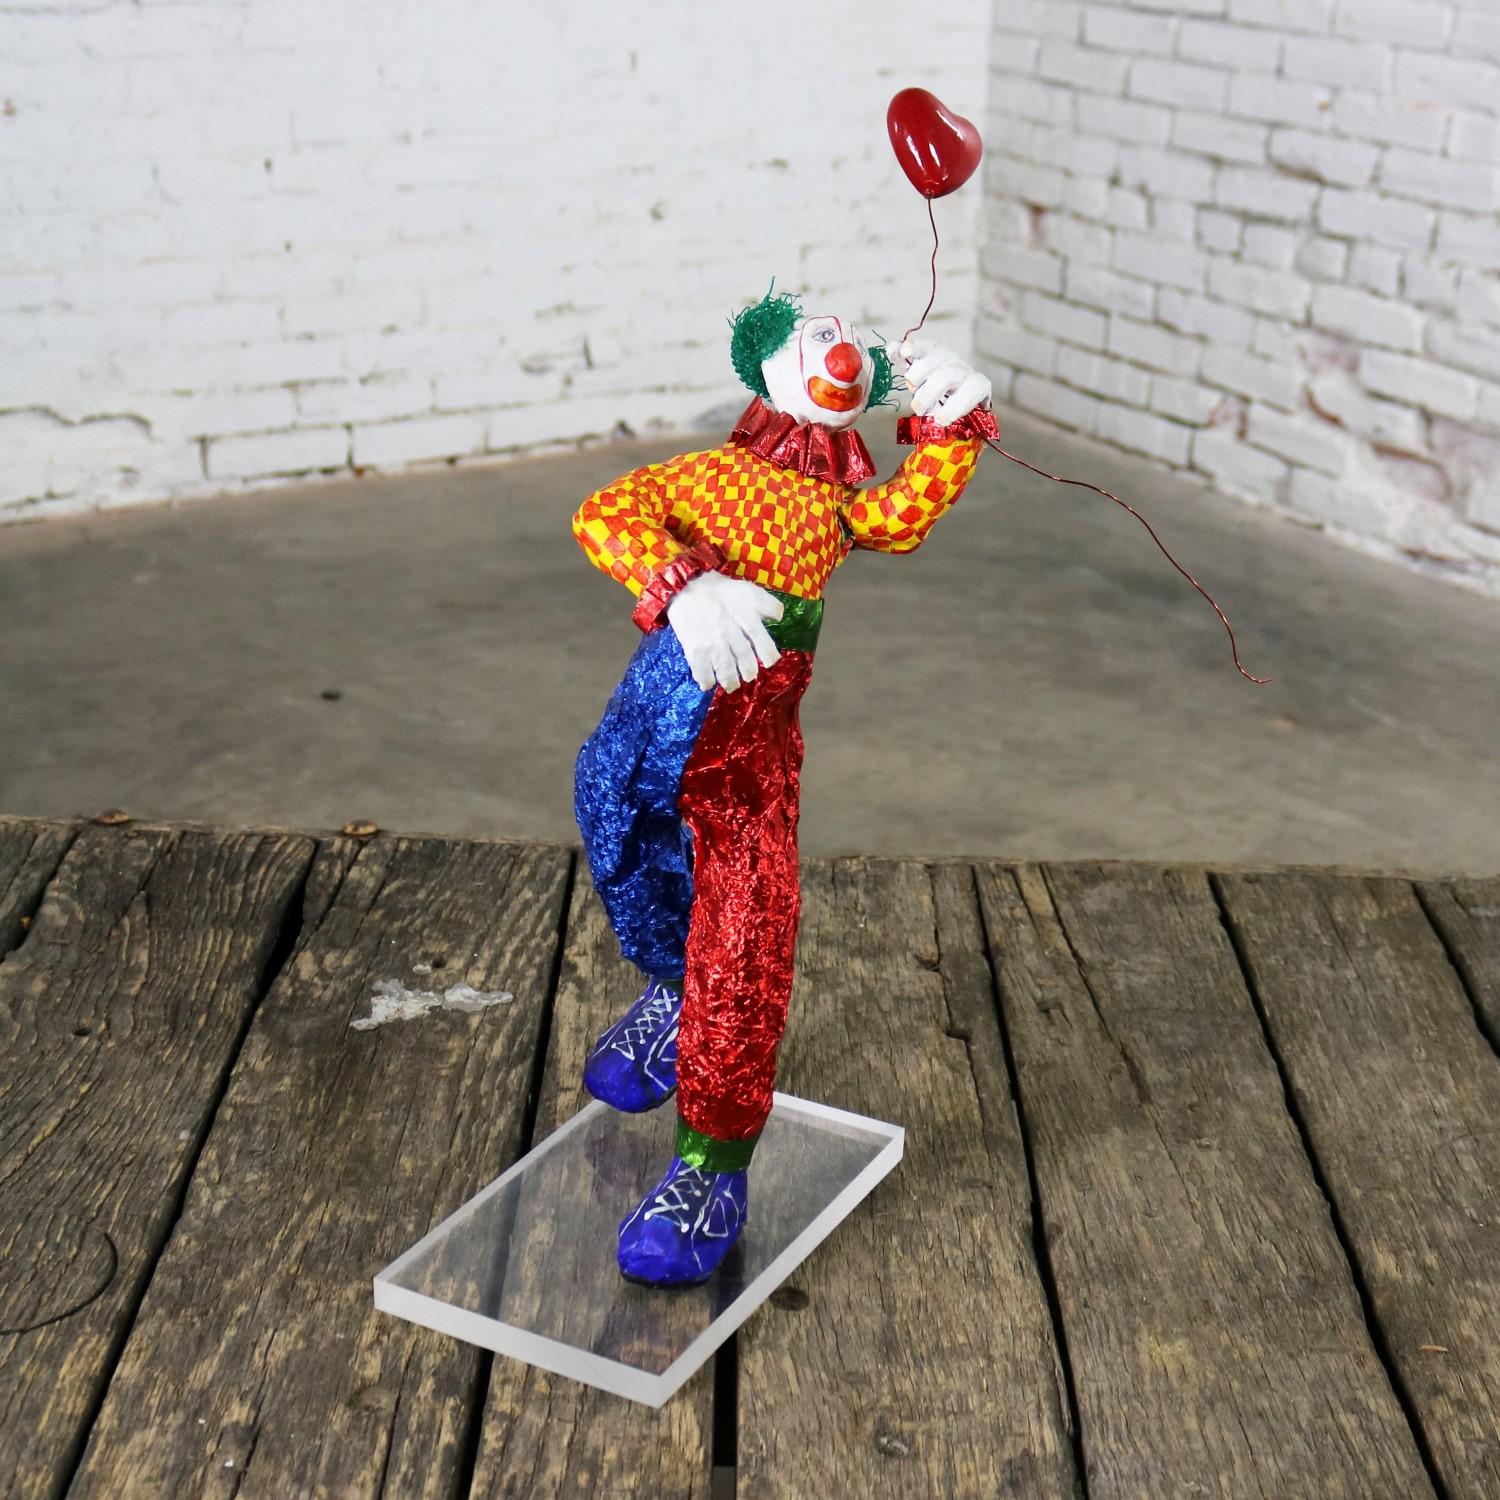 Lustige und bunte Folk-Art-Clown-Skulptur mit einem Herzballon aus gemischten Materialien wie Pappmaché, Papier, Plastik und Draht auf einem Plexiglasständer. Es ist in einem wunderbaren Vintage-Zustand. An einem seiner Unterarme befindet sich ein